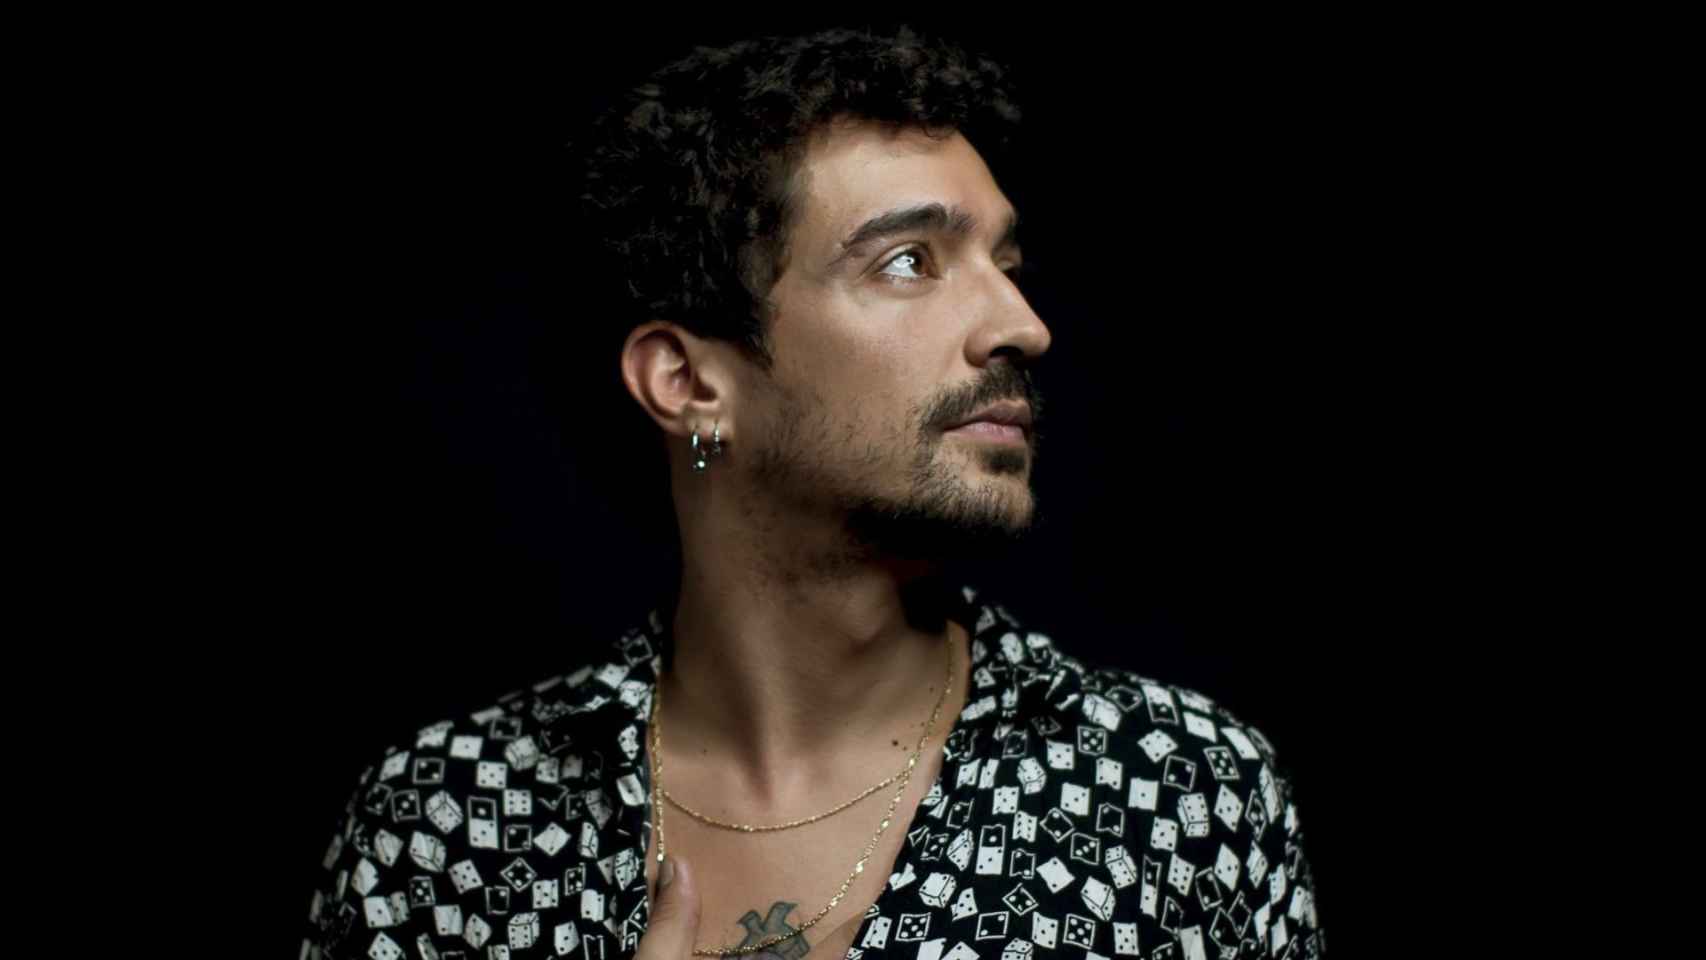 El cantante Muerdo que cerrará su gira en Barcelona / SALA APOLO